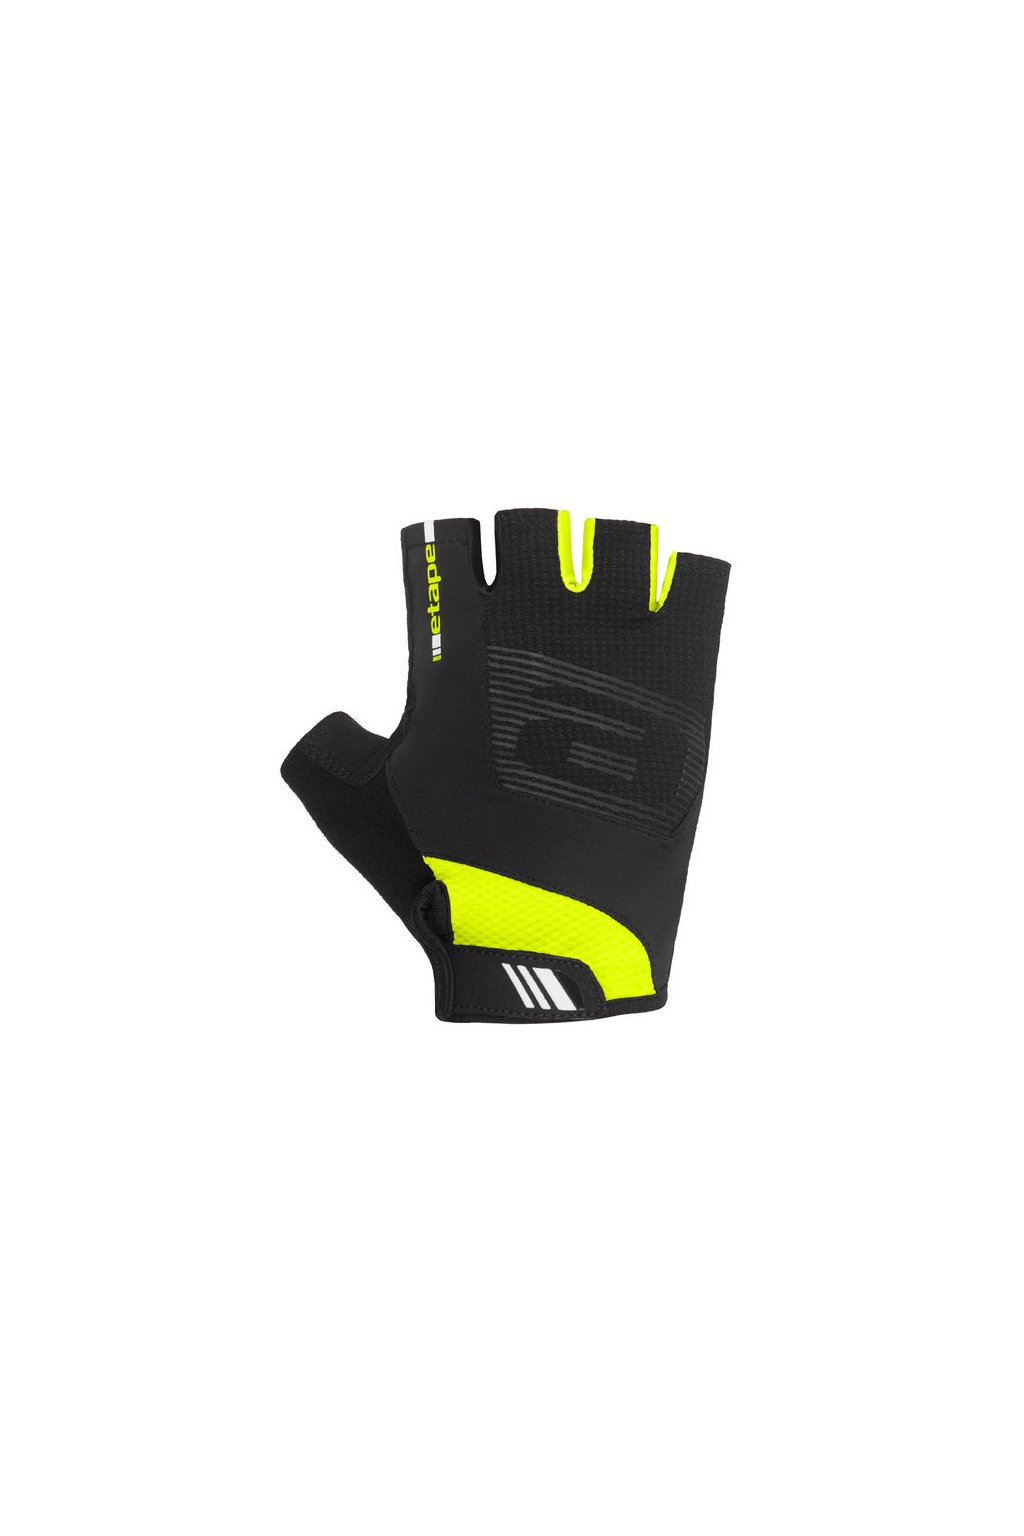 Etape – rukavice GARDA, černá/žlutá fluo